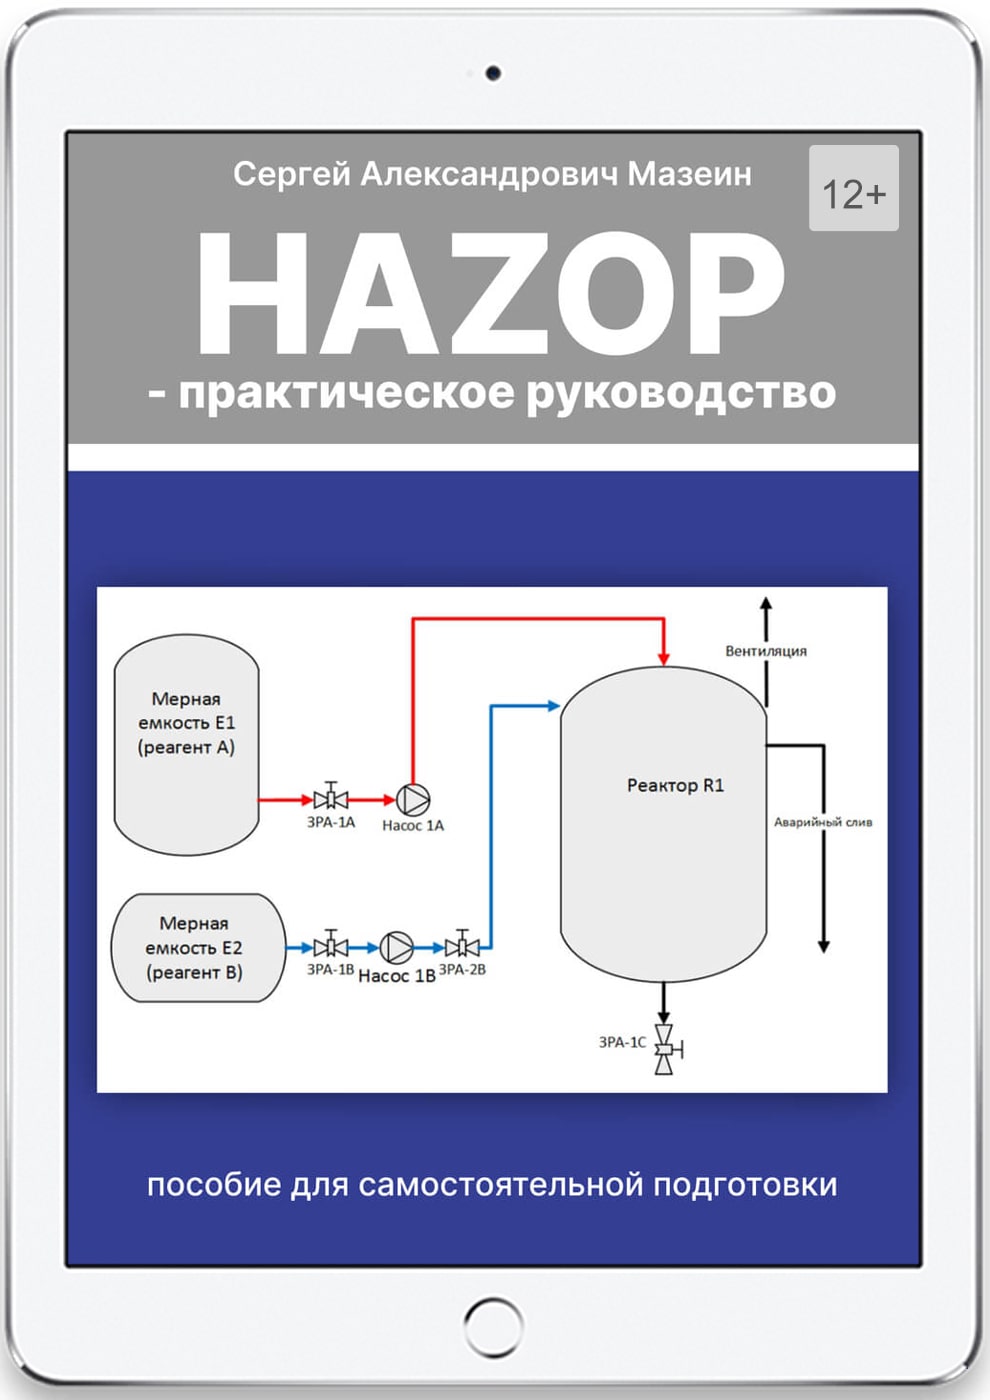 hazop. практическое руководство (электронная версия)